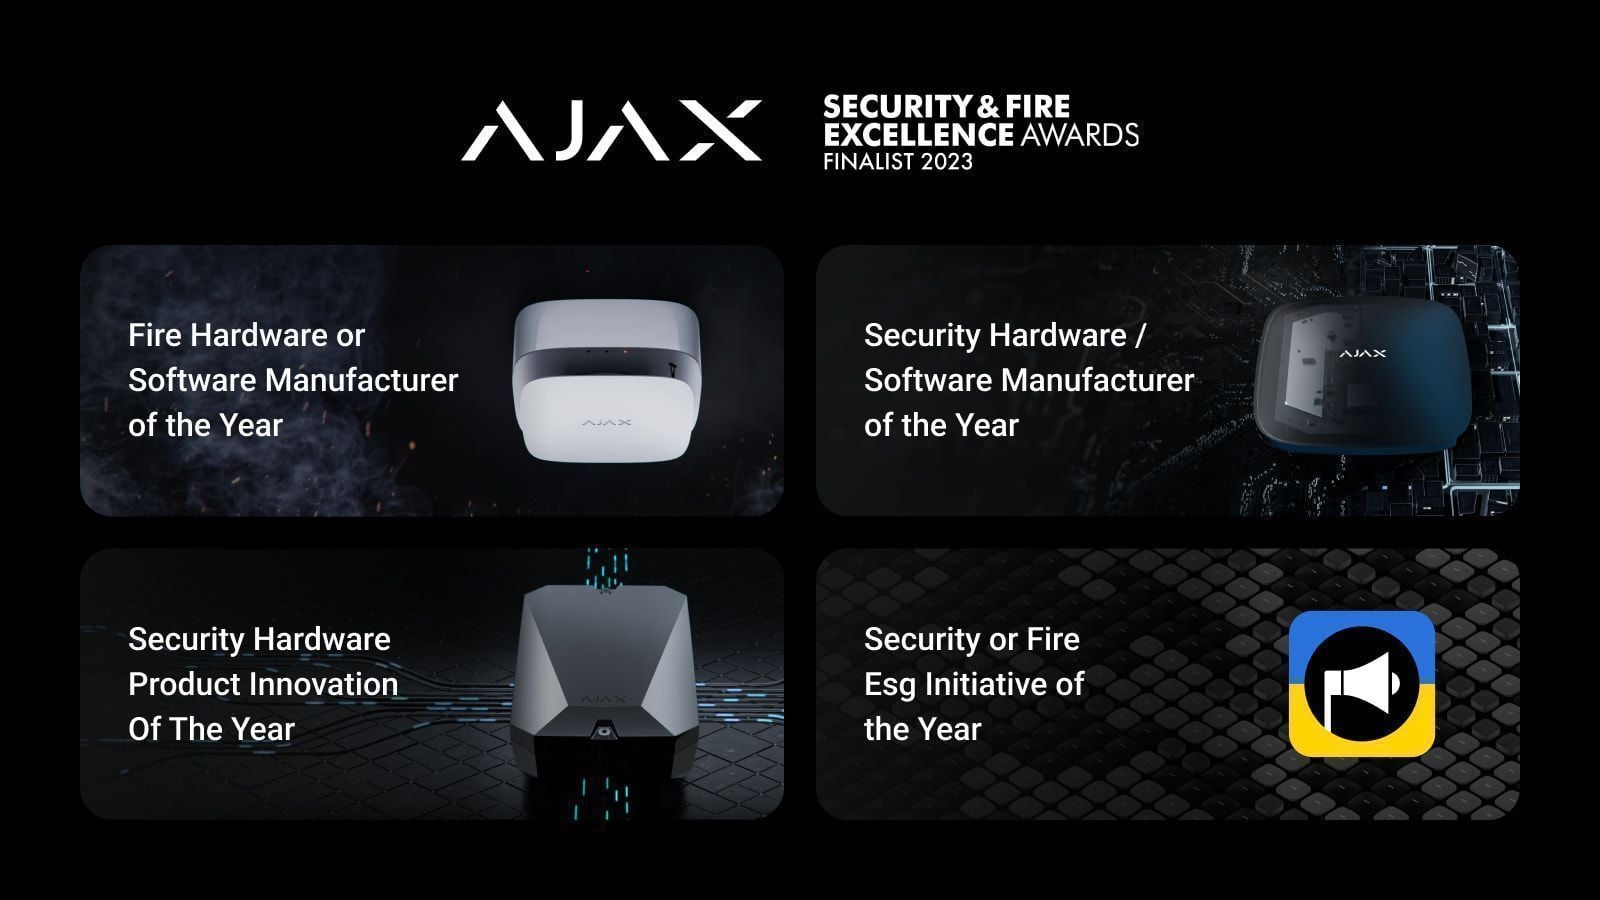 Ajax Systems признан финалистом премии Security & Fire Excellence Awards 2023 в четырех категориях